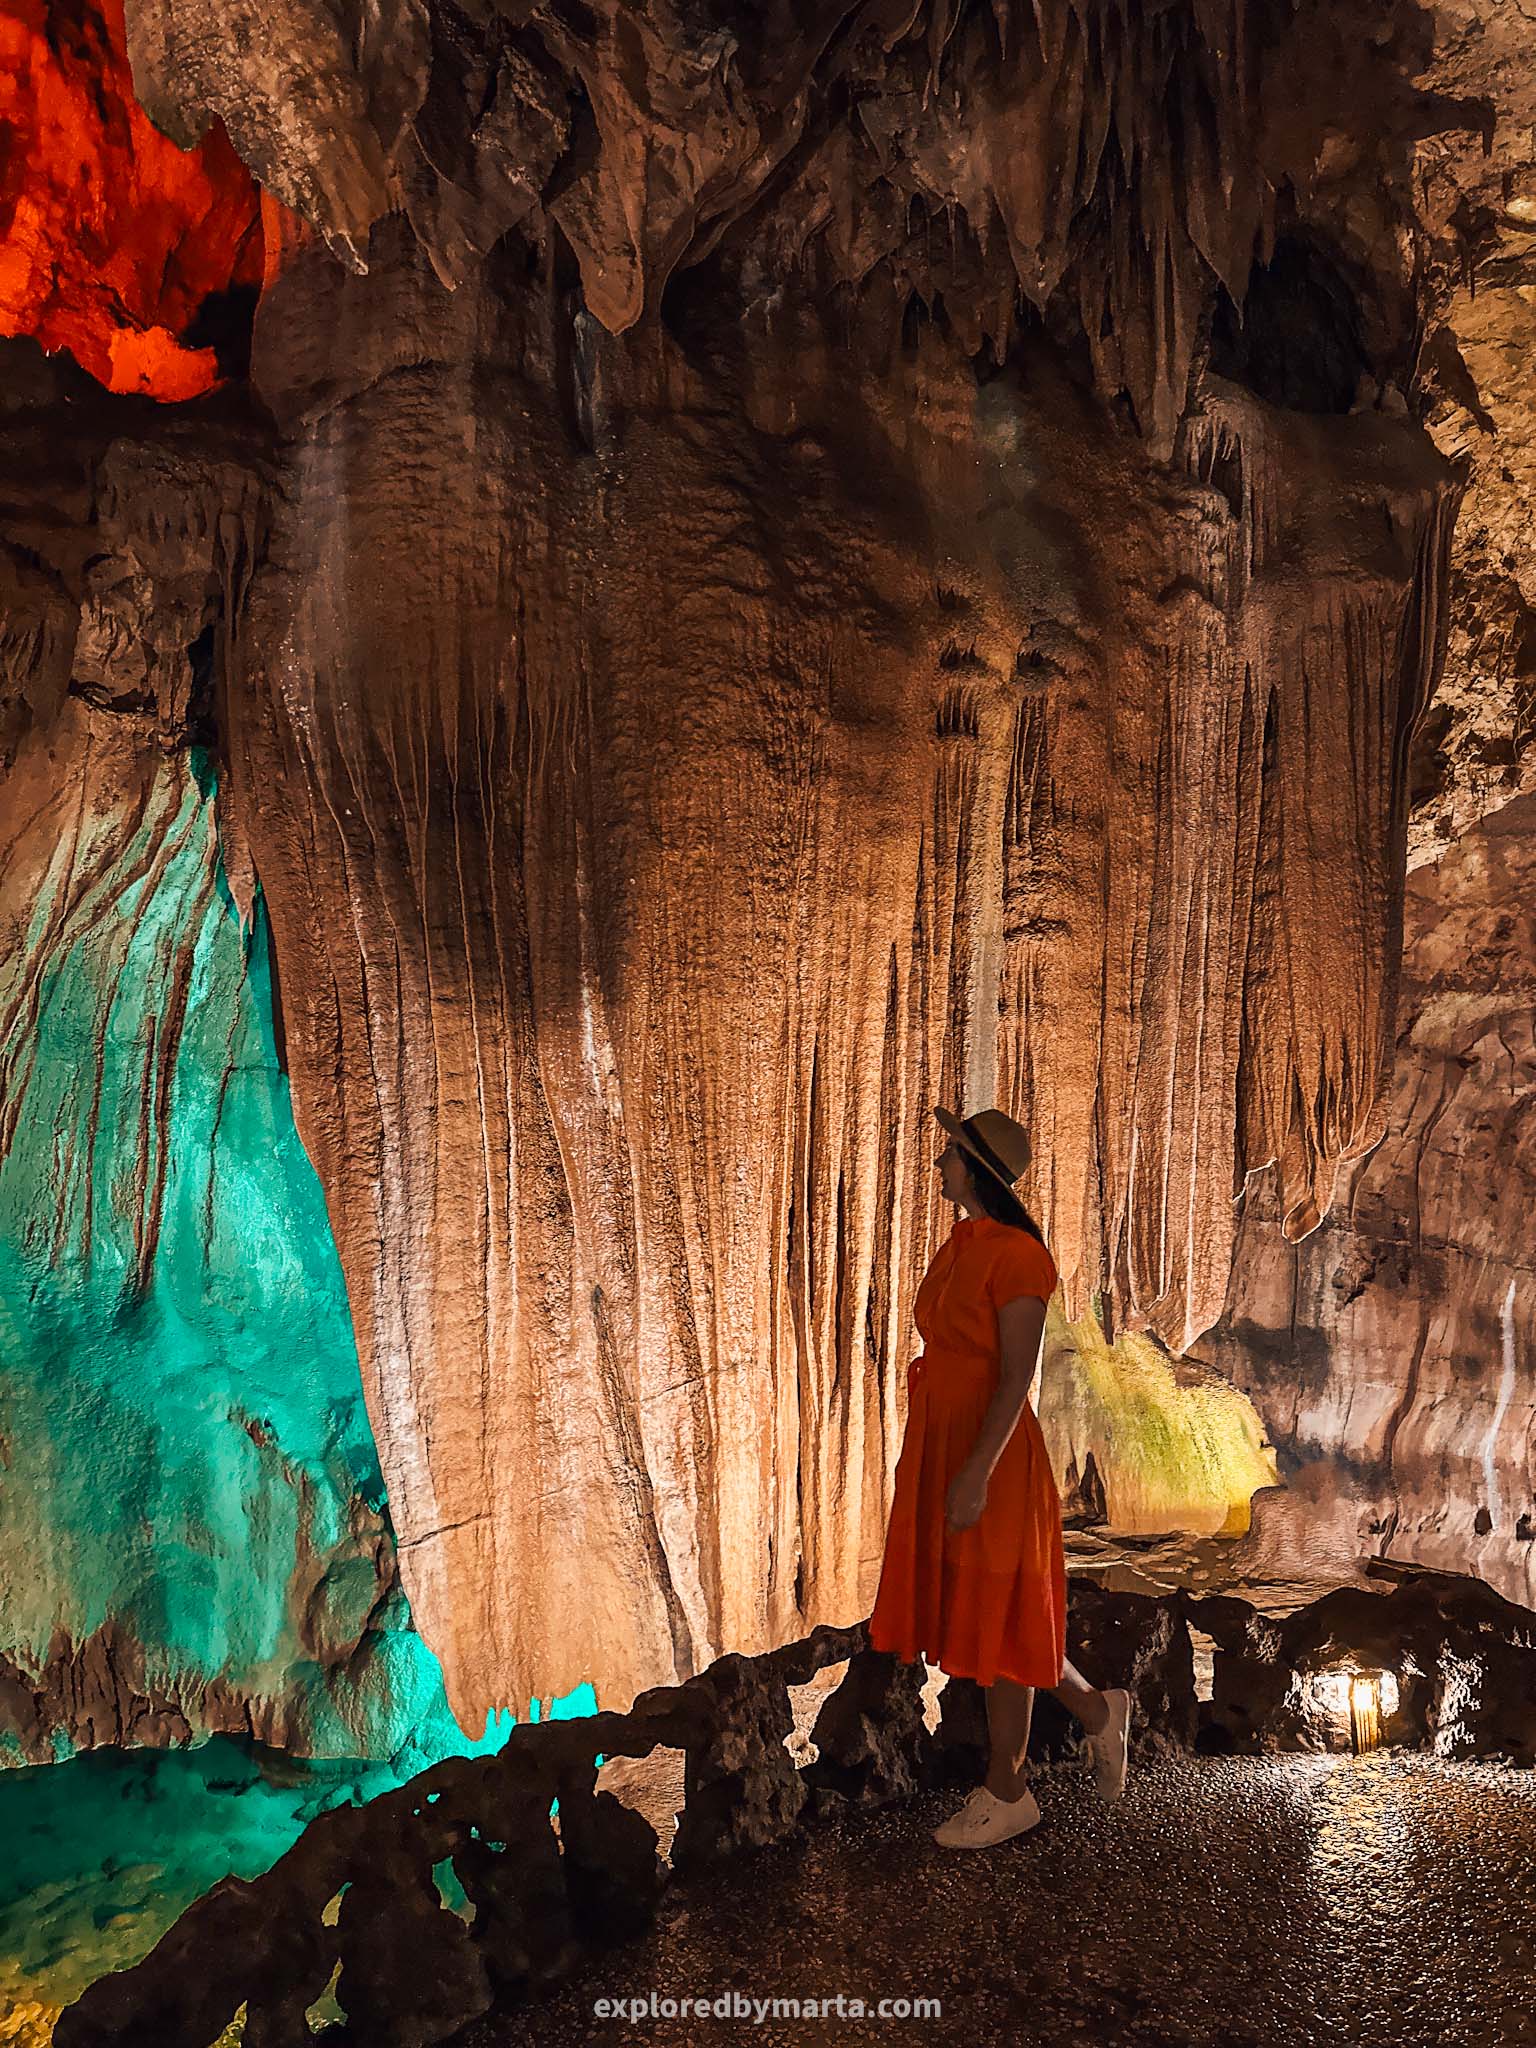 Grutas de Mira de Aire limestone caves in Portugal